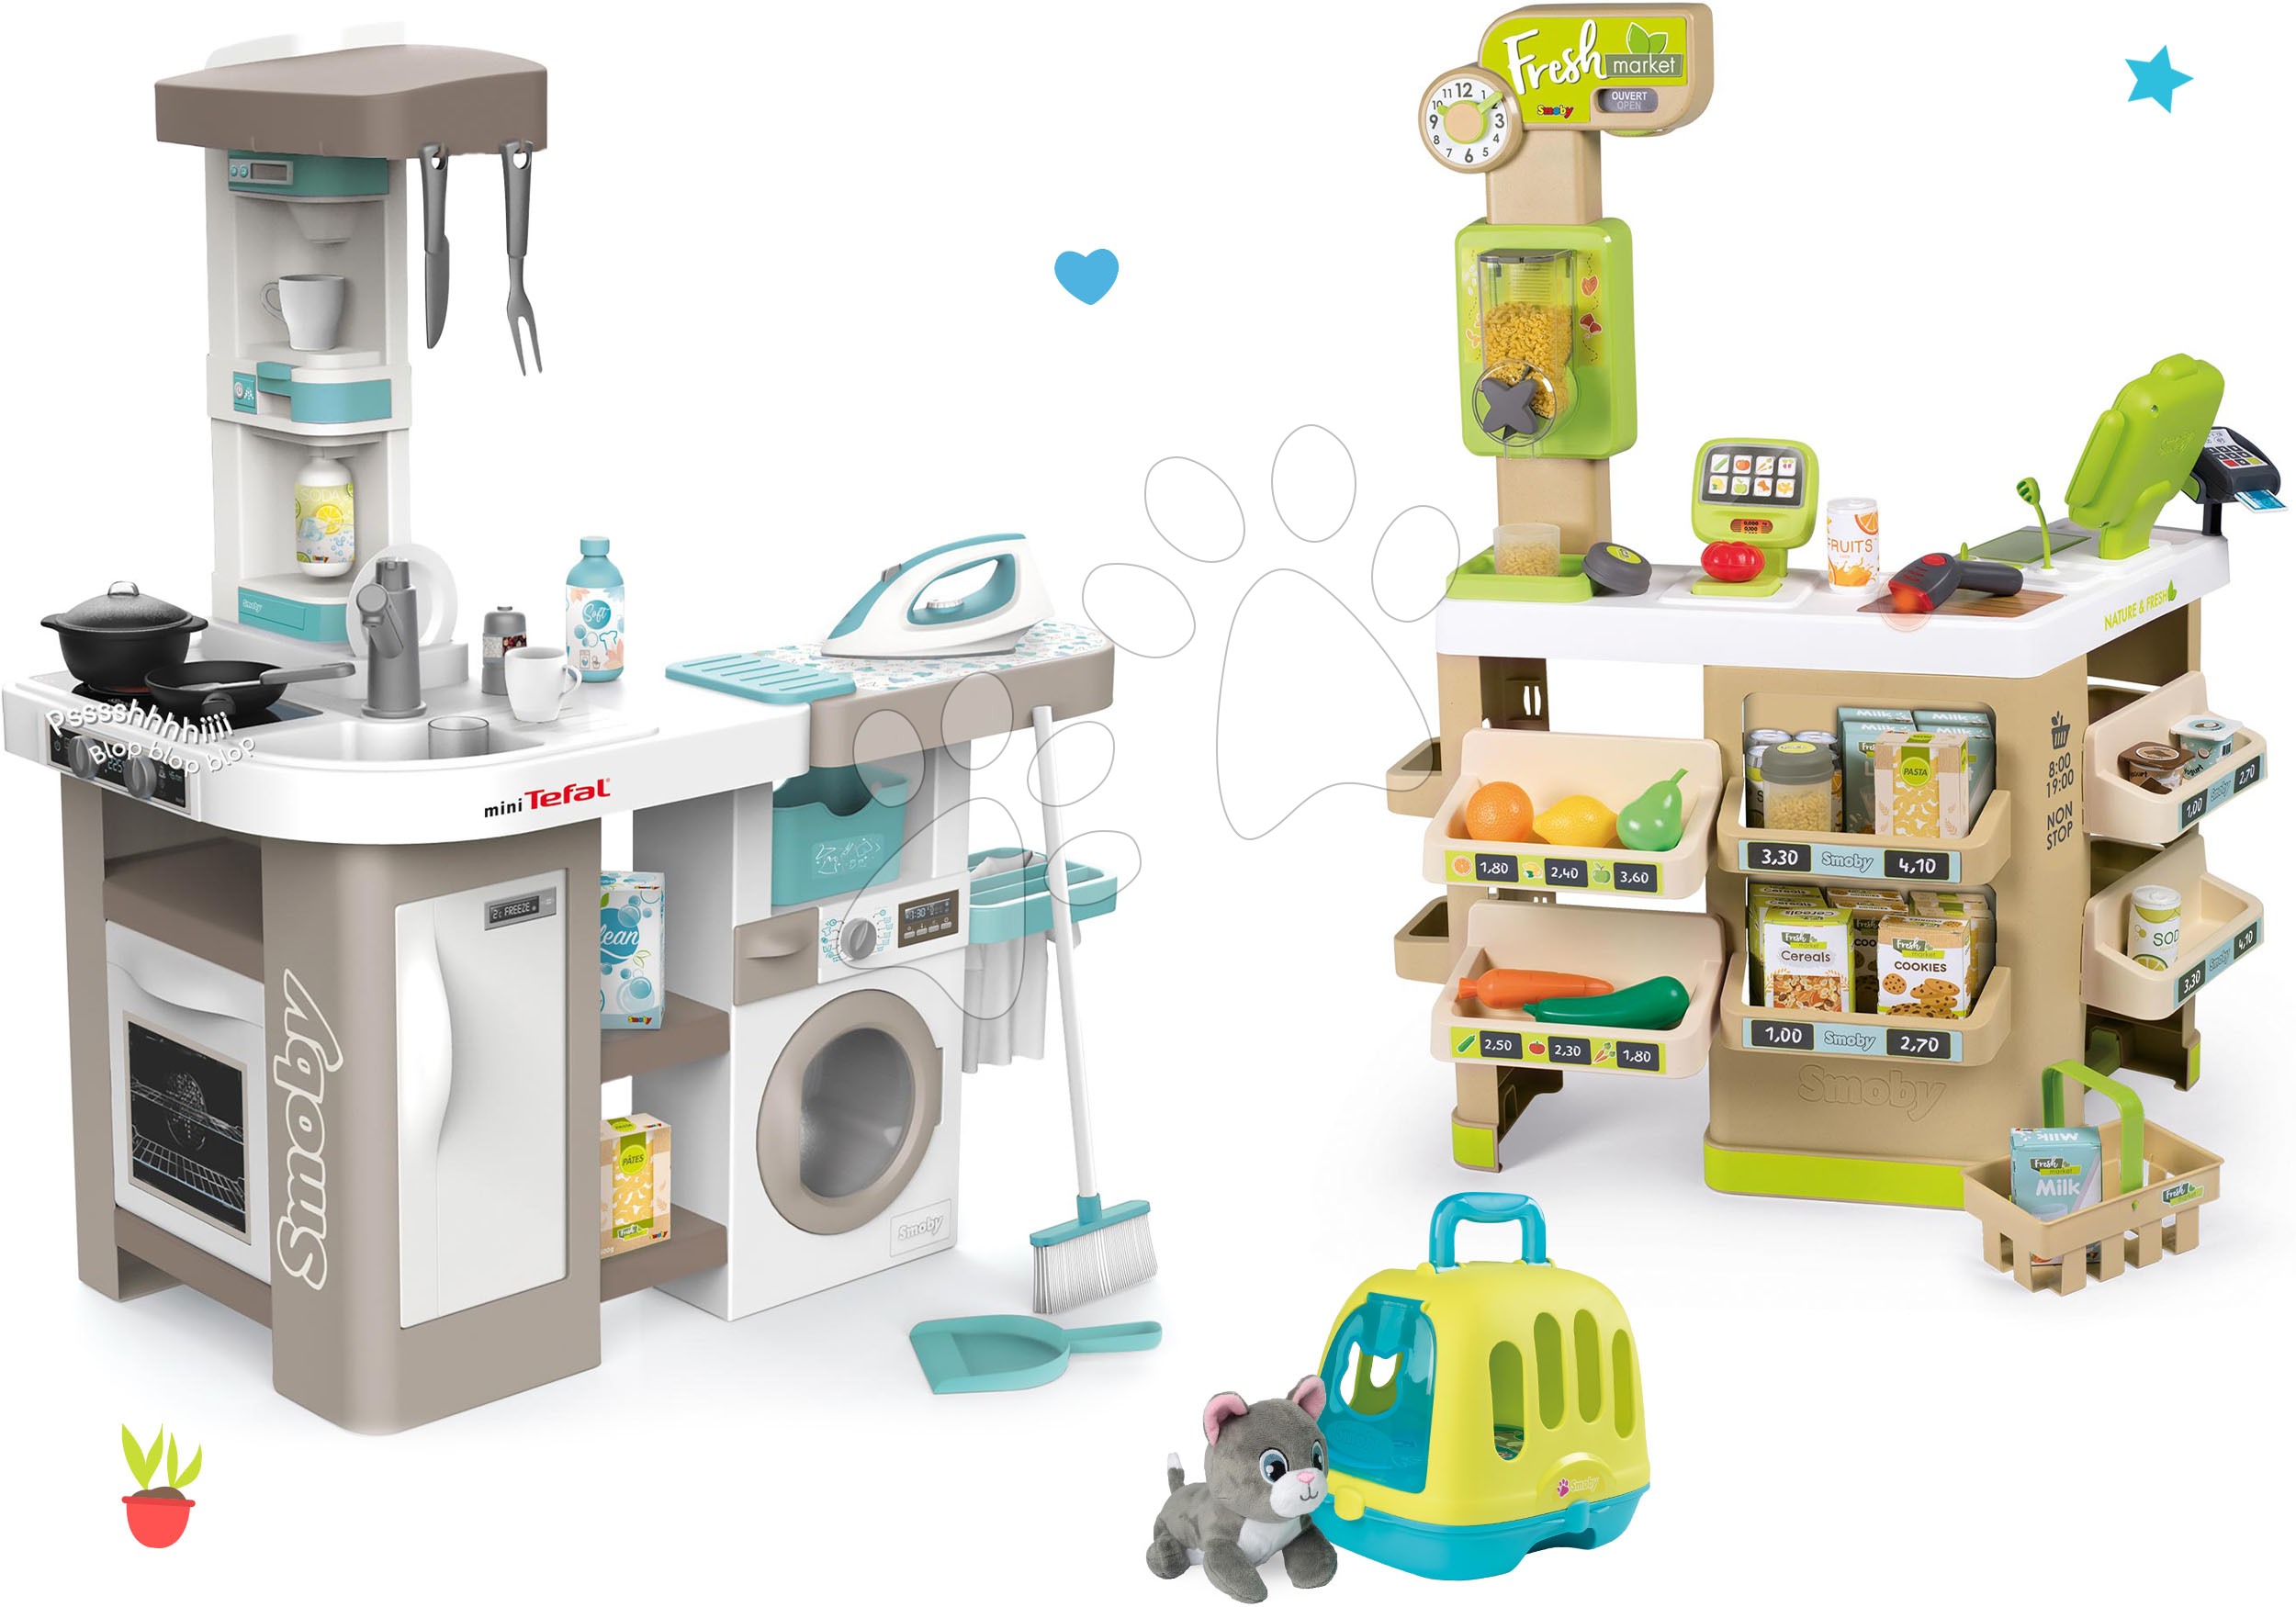 Kuhinje za otroke kompleti - Komplet elektronska kuhinja s pralnim strojem in likalno desko Tefal Cleaning Kitchen 360° Smoby in trgovina Bio Fresh Market z veterinarskim kovčkom